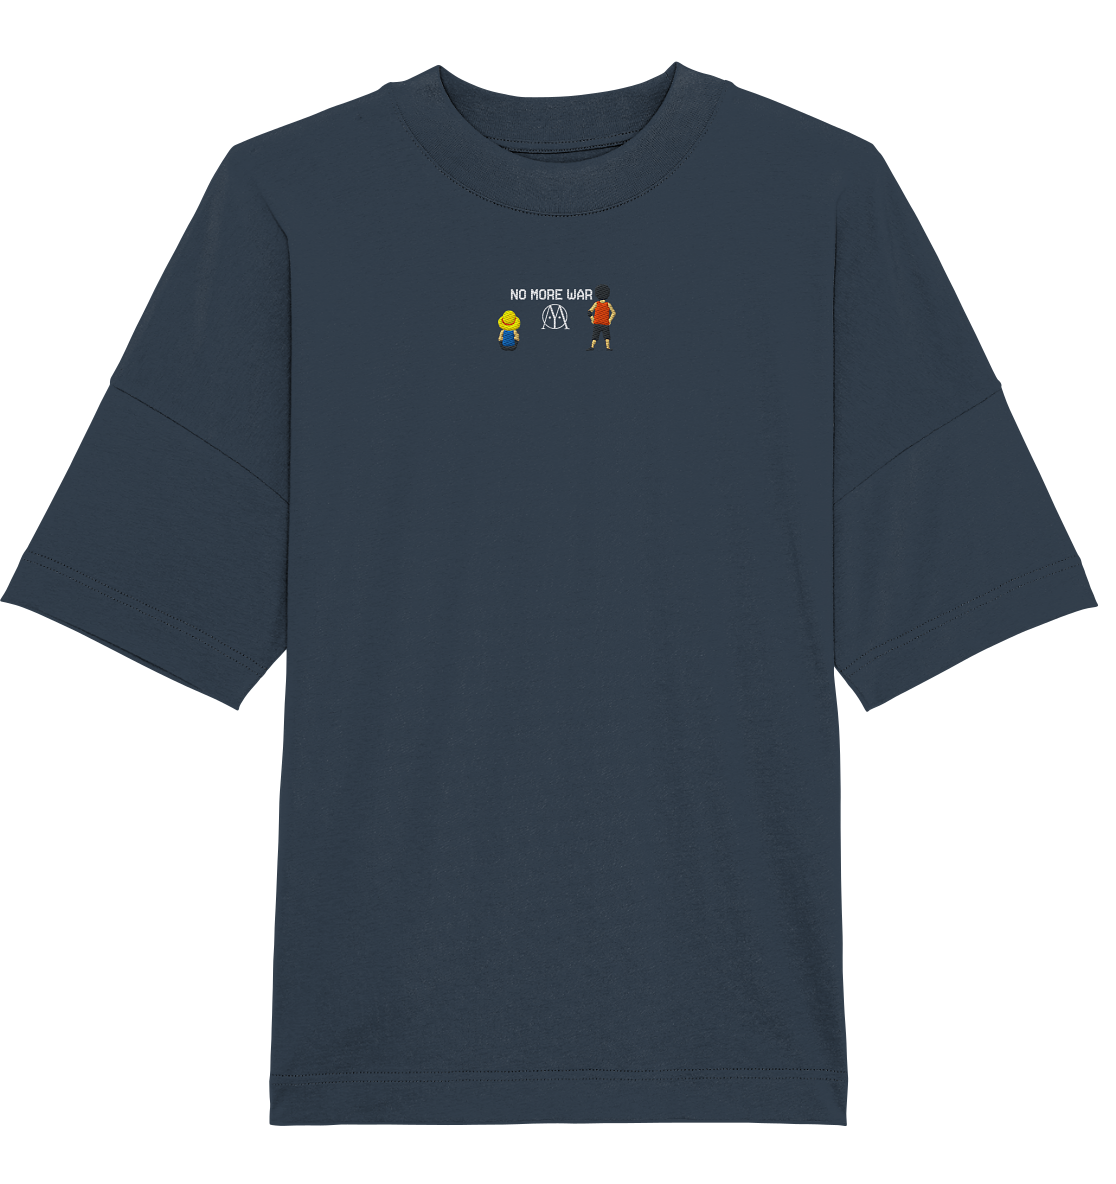 front-organic-oversize-shirt-stick-313d4a-1116x.png